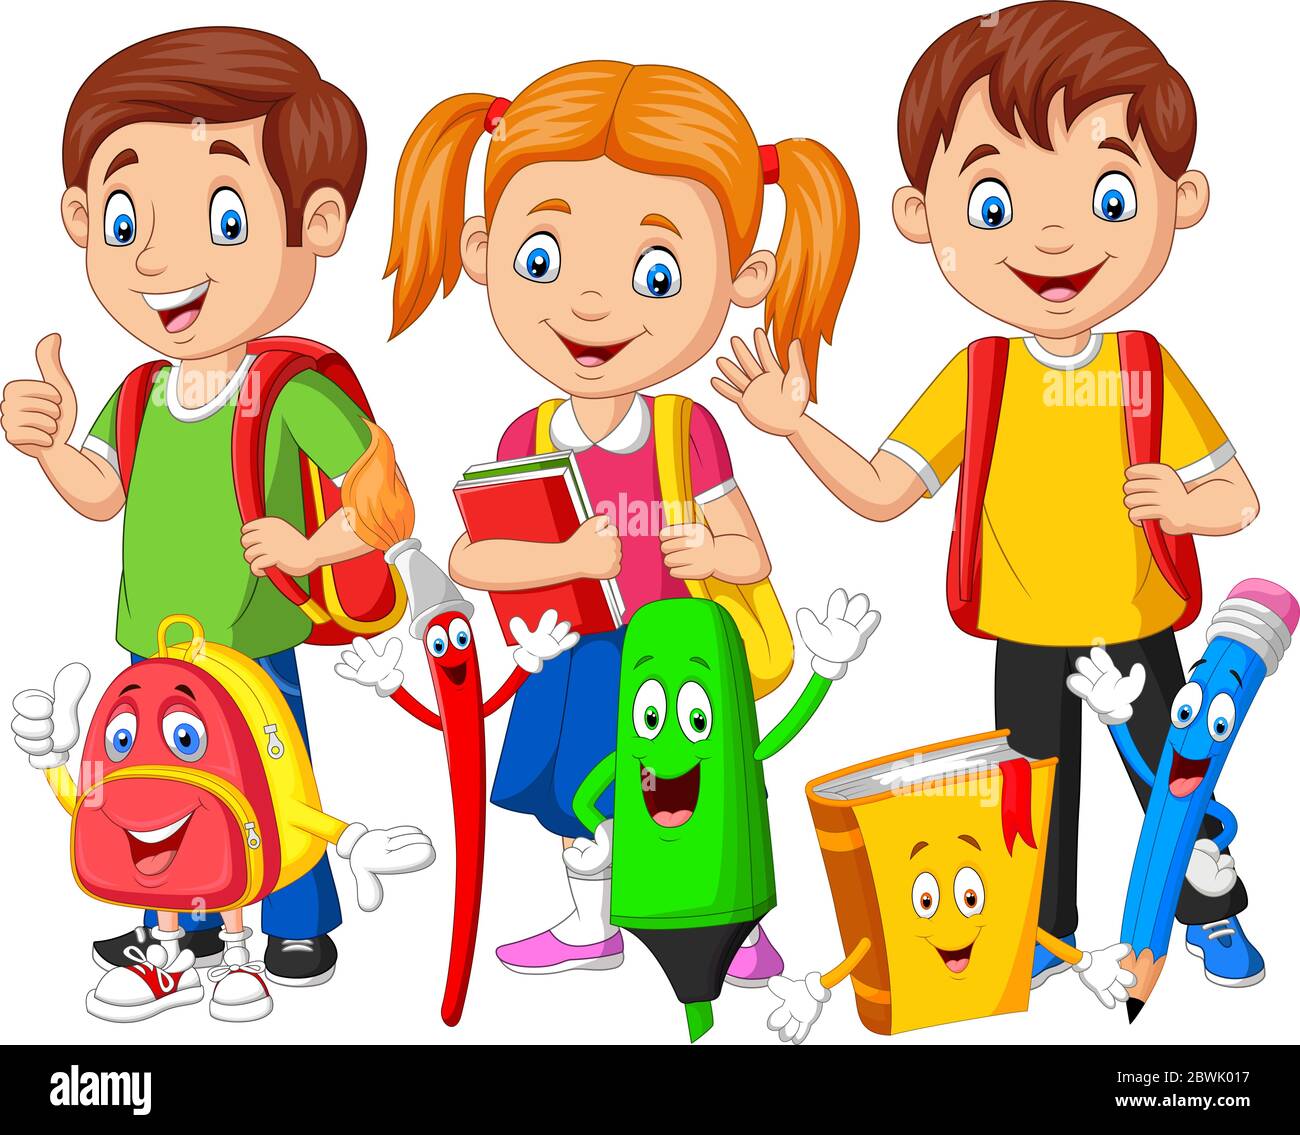 Cartoon happy school children with school supplies Stock Vector Image & Art  - Alamy